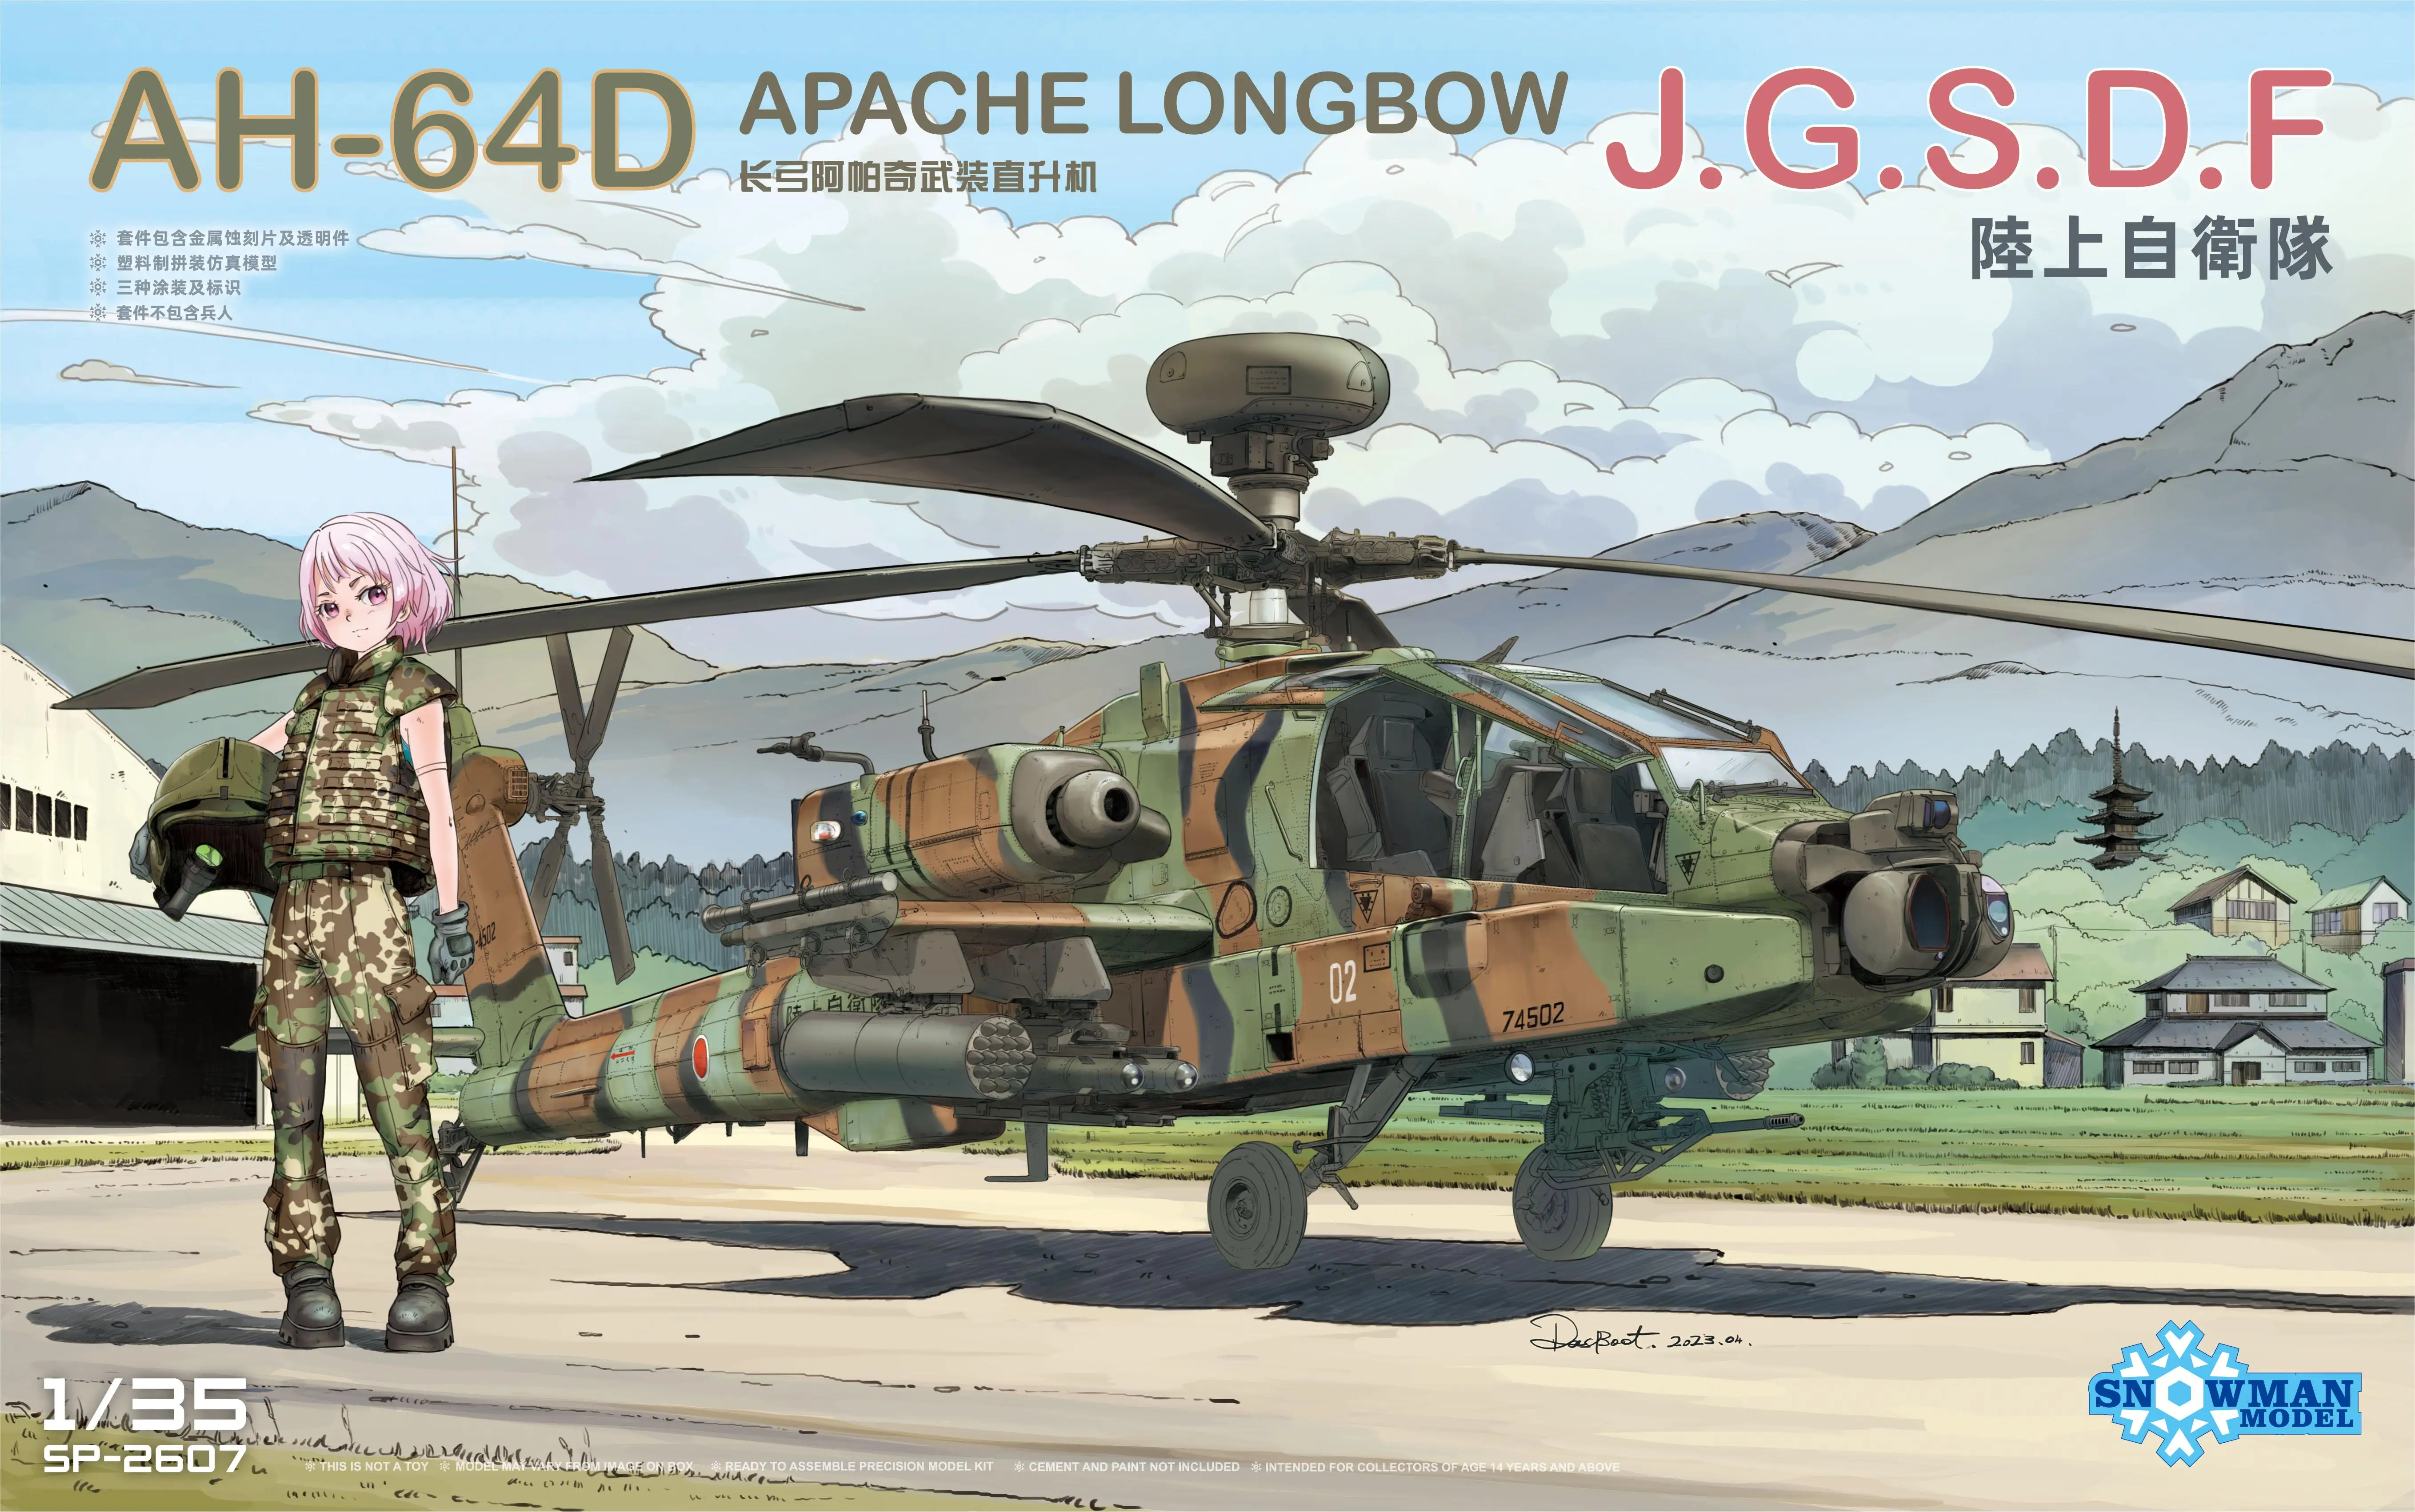 スノーマンモデルah-64d、apache-longbow、sp-2607、1-35